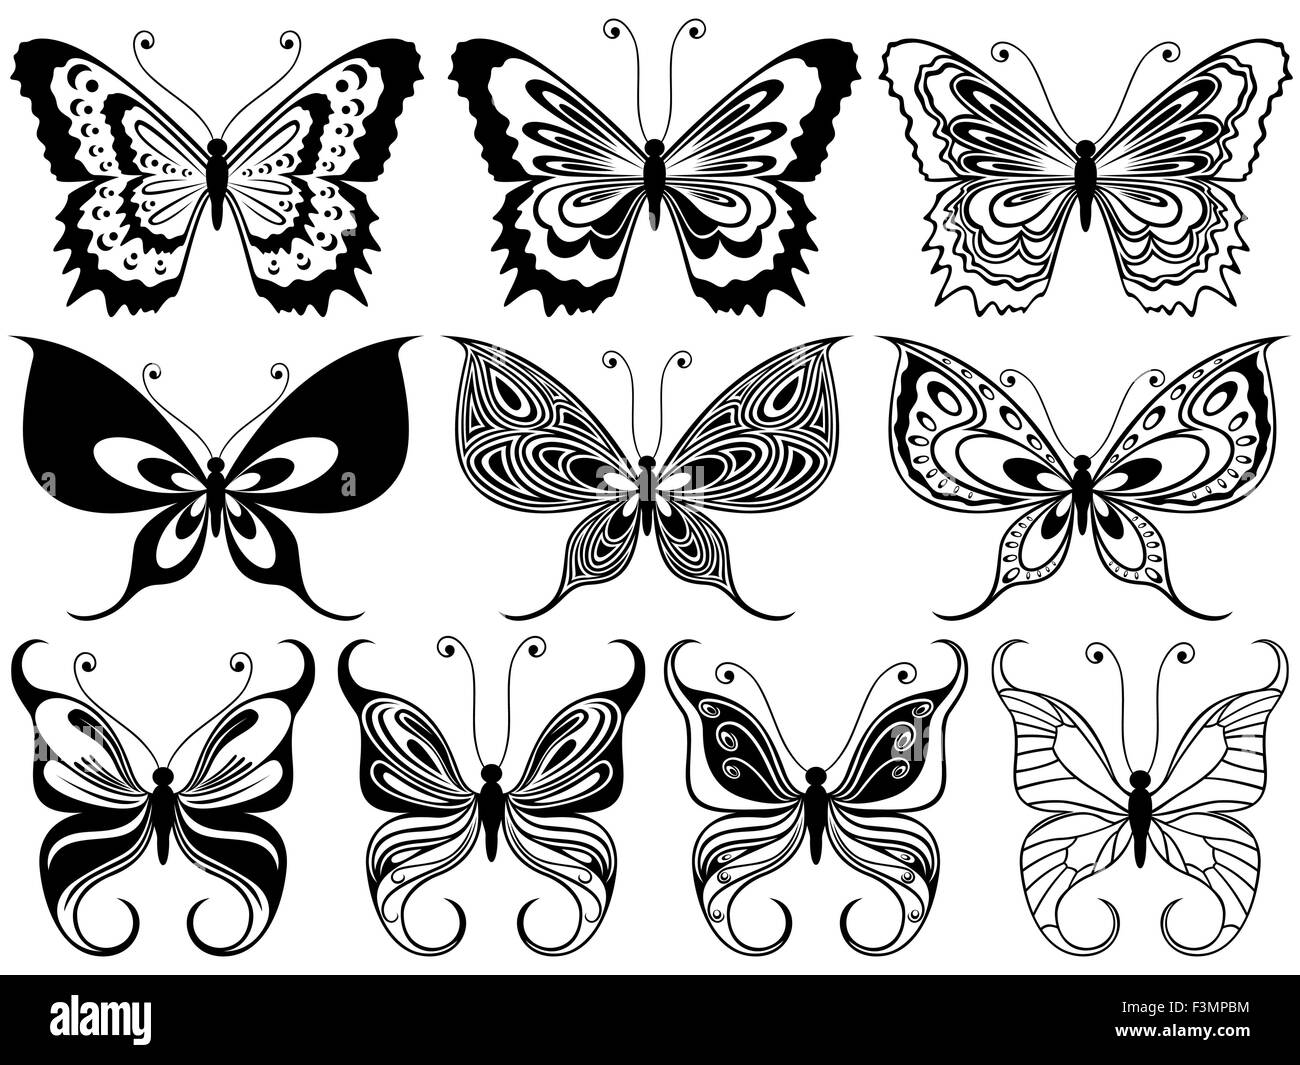 Satz von zehn schwarze ornamentalen Schablonen Schmetterlinge isoliert auf einem weißen Hintergrund, Handzeichnung Vektor-illustration Stock Vektor